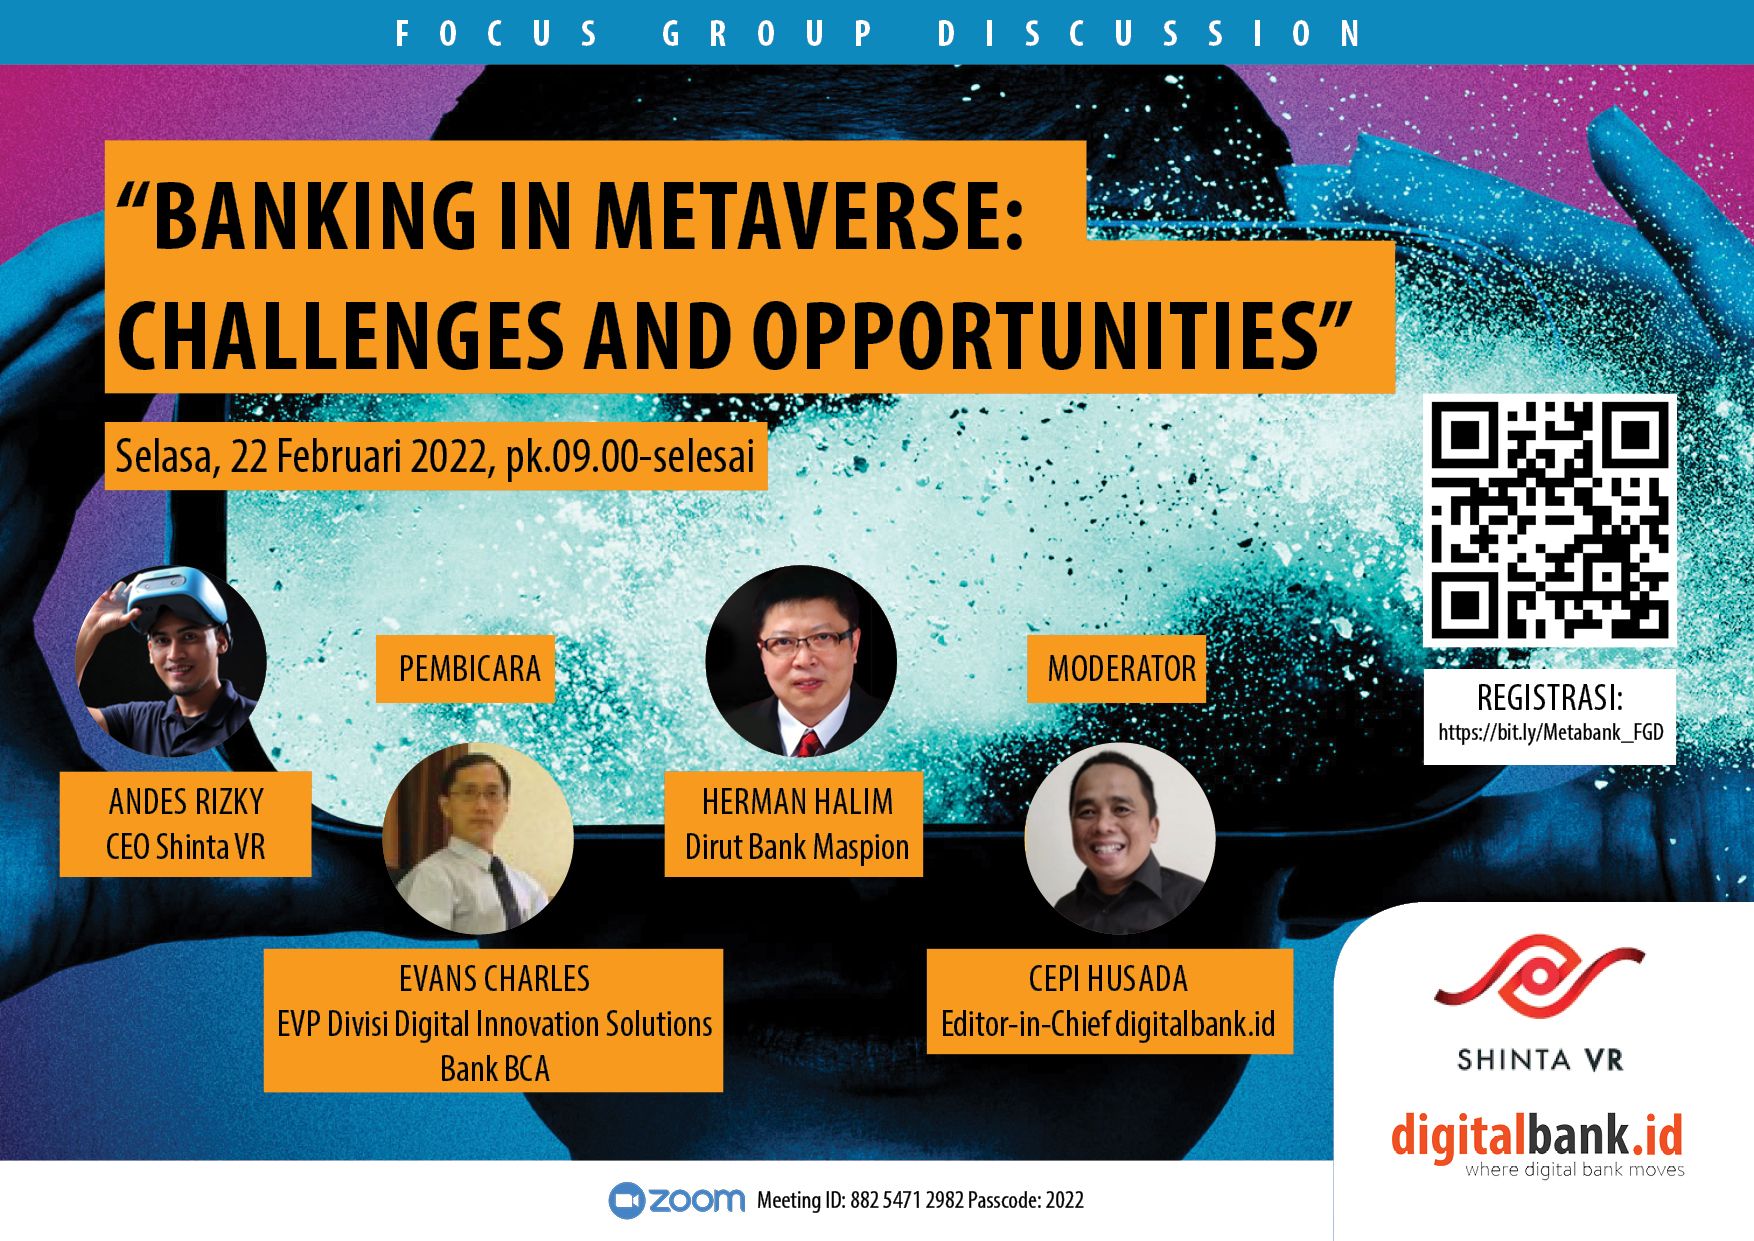 digitalbank.id dan Shinta VR akan menggelar Focus Group discussion (FGD) bertajuk Banking on Metaverse: Challenges and Opportunities yang akan diselenggarakan secara daring pada 22 Februari 2022 mulai pk.09.00 - selesai.